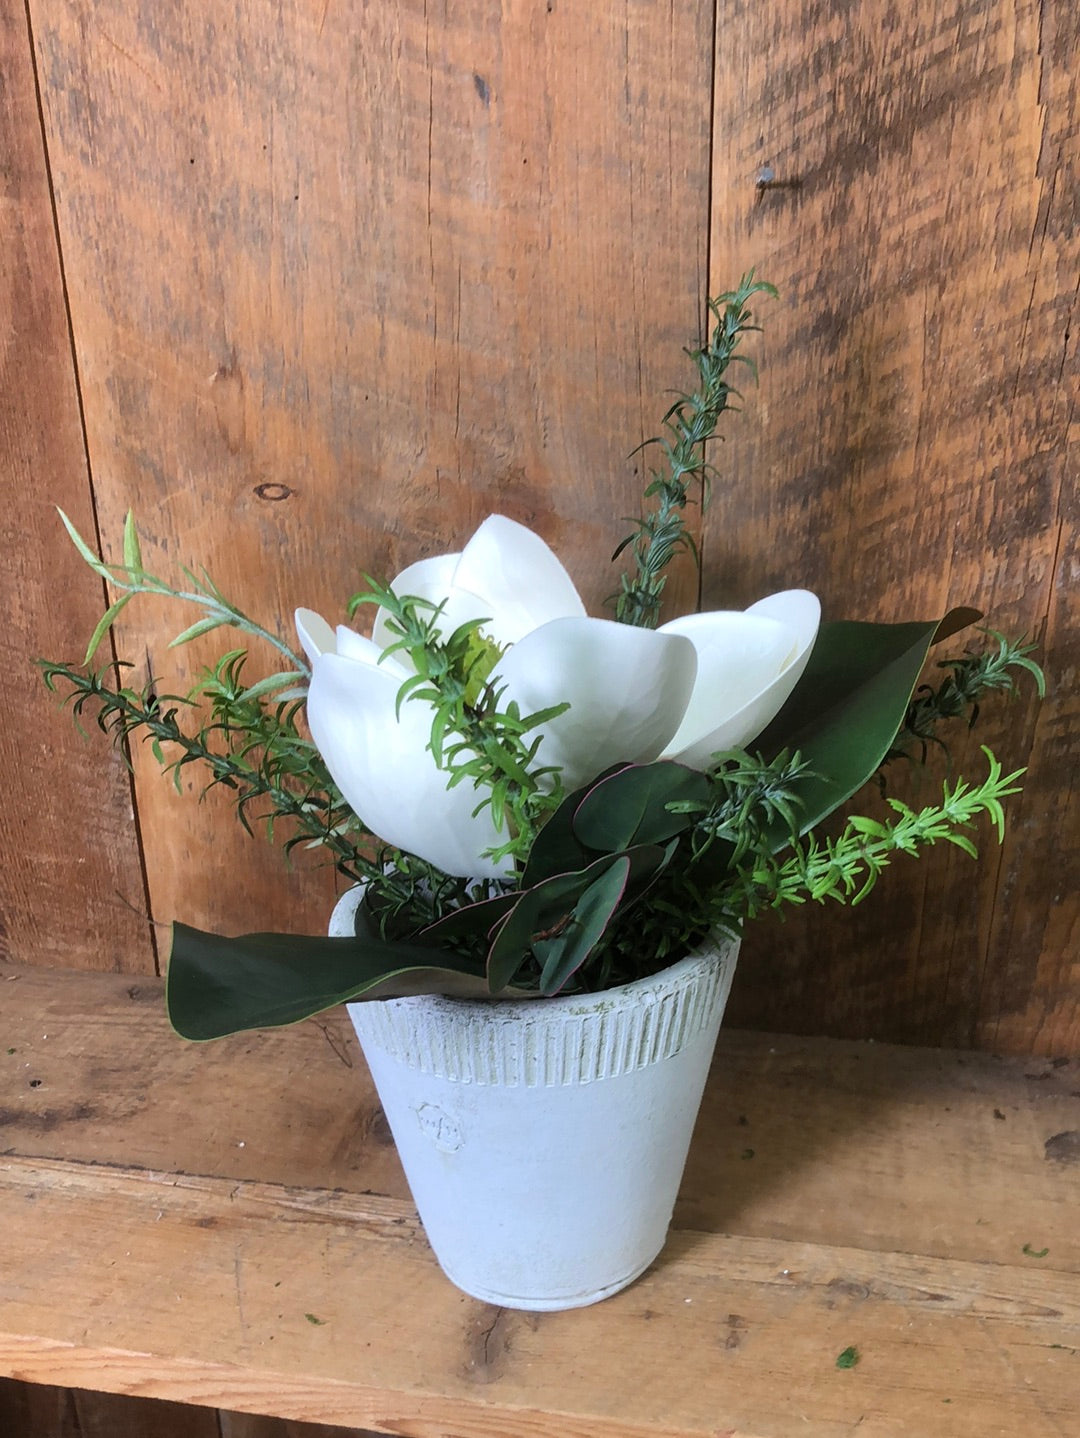 Classic Magnolia Petite Bouquet Drop In